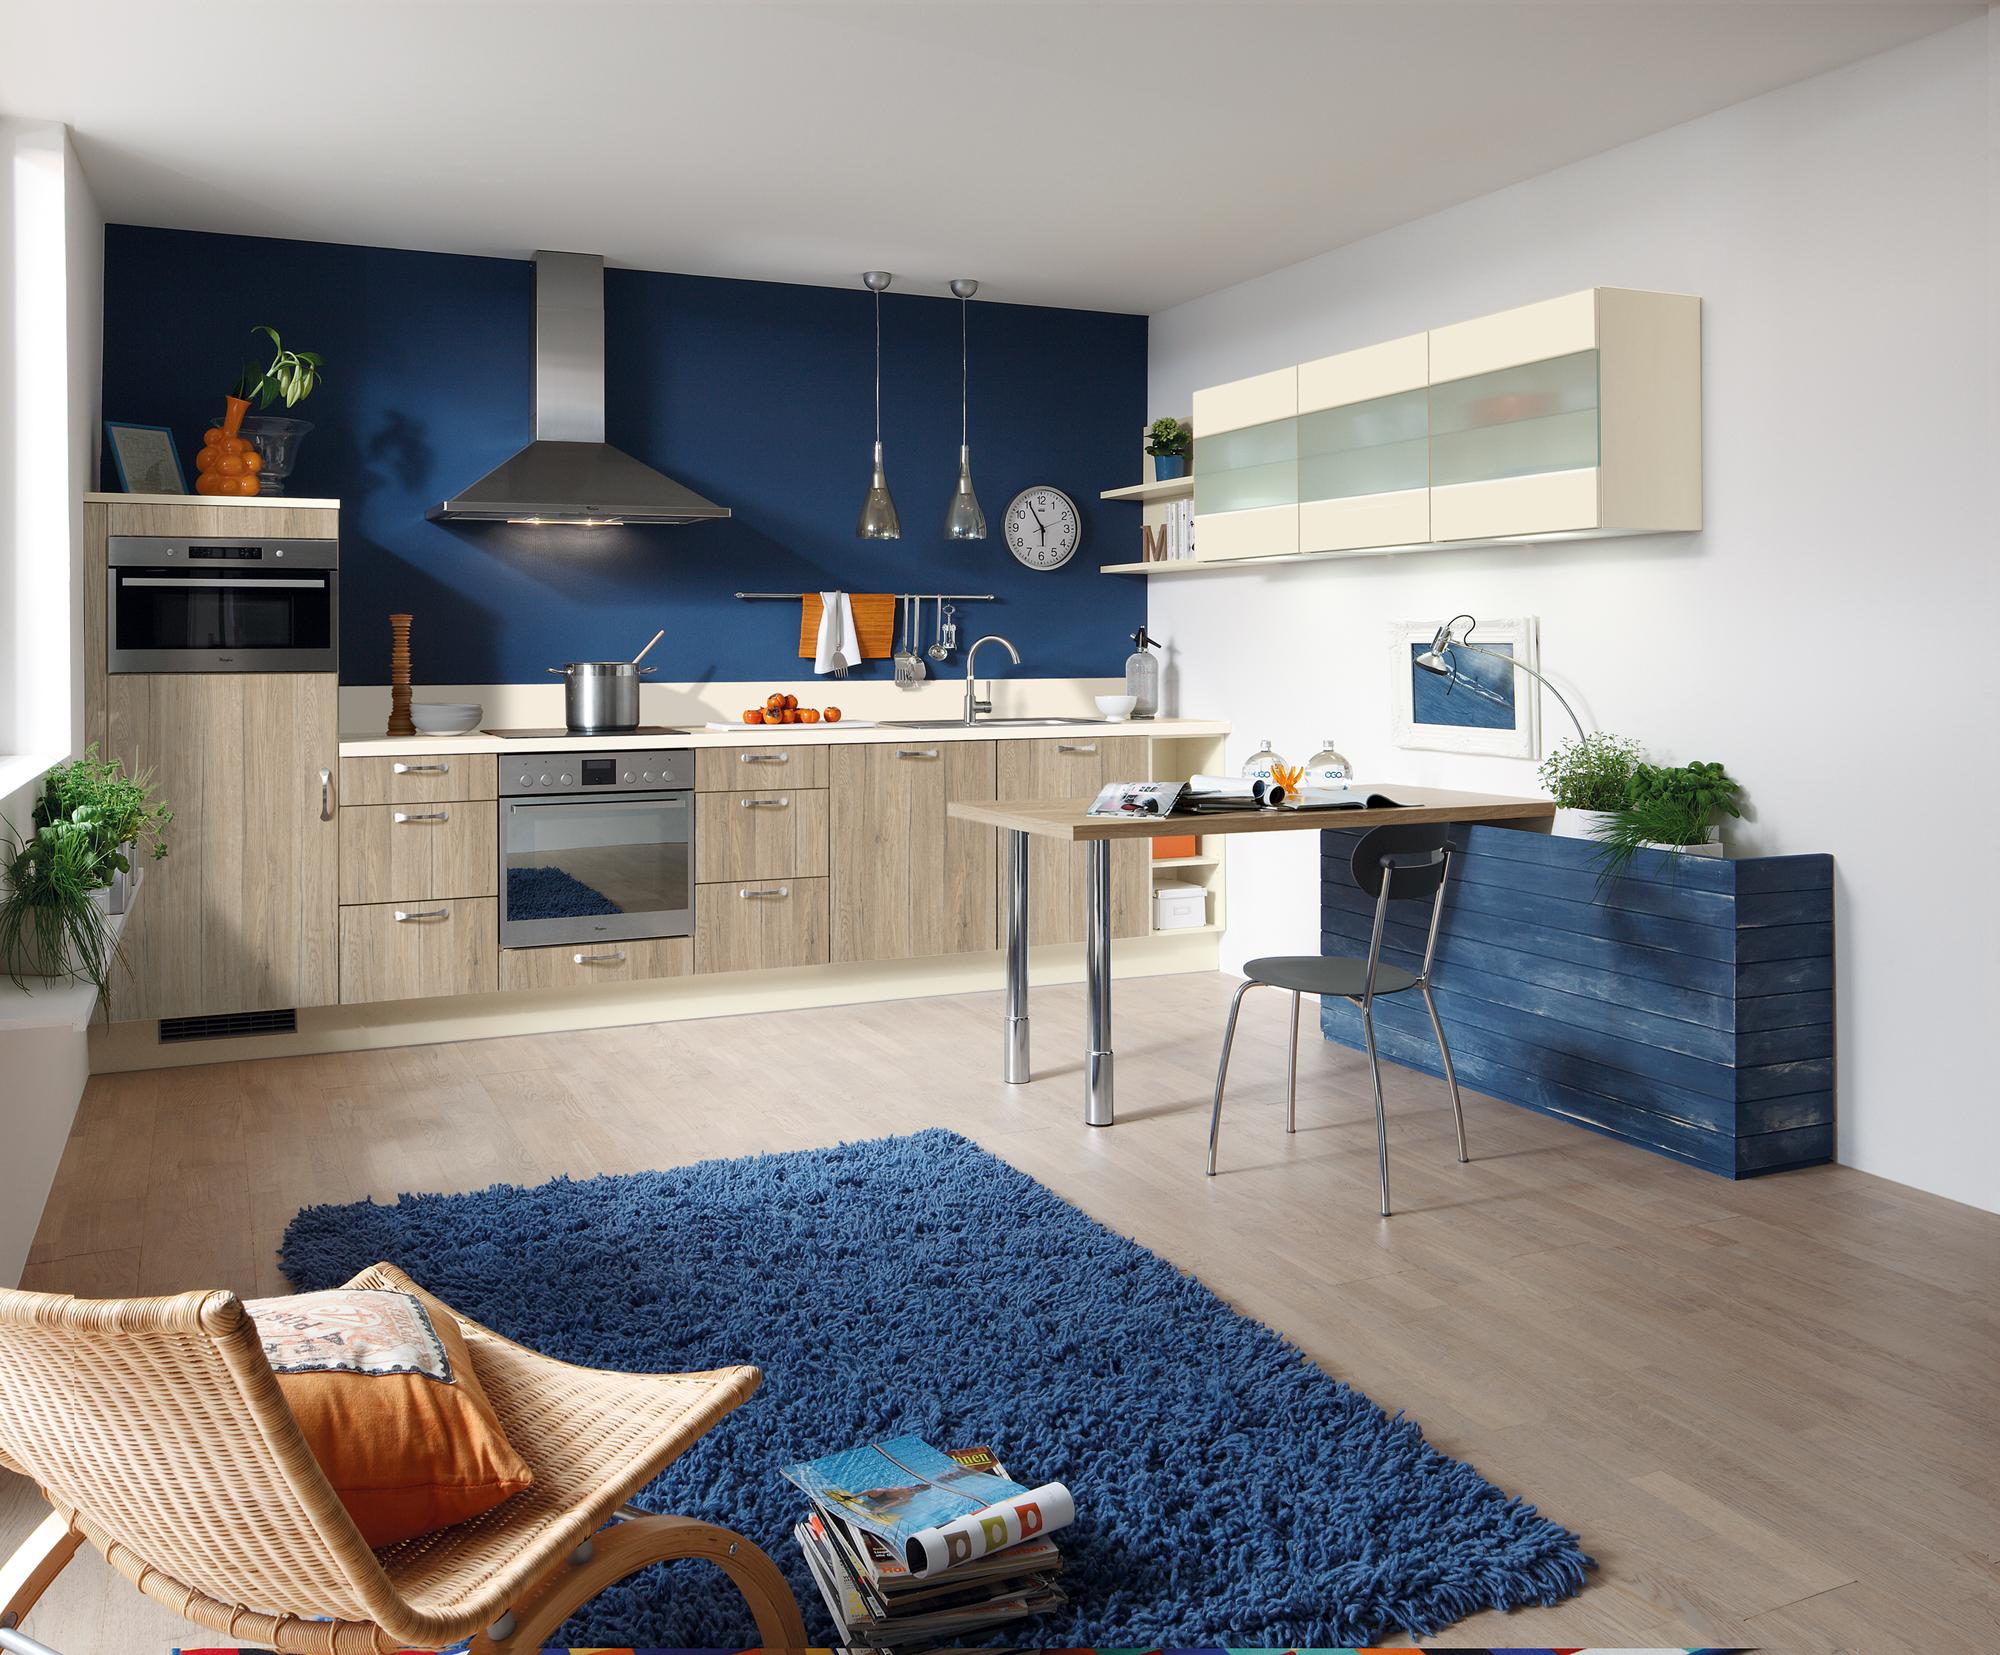 Küche in Eiche und Marineblau #wandfarbe #dunstabzugshaube #küchentisch #blauewandfarbe #blauewandgestaltung #wandgestaltungküche #küchegestalten ©Pino Küchen